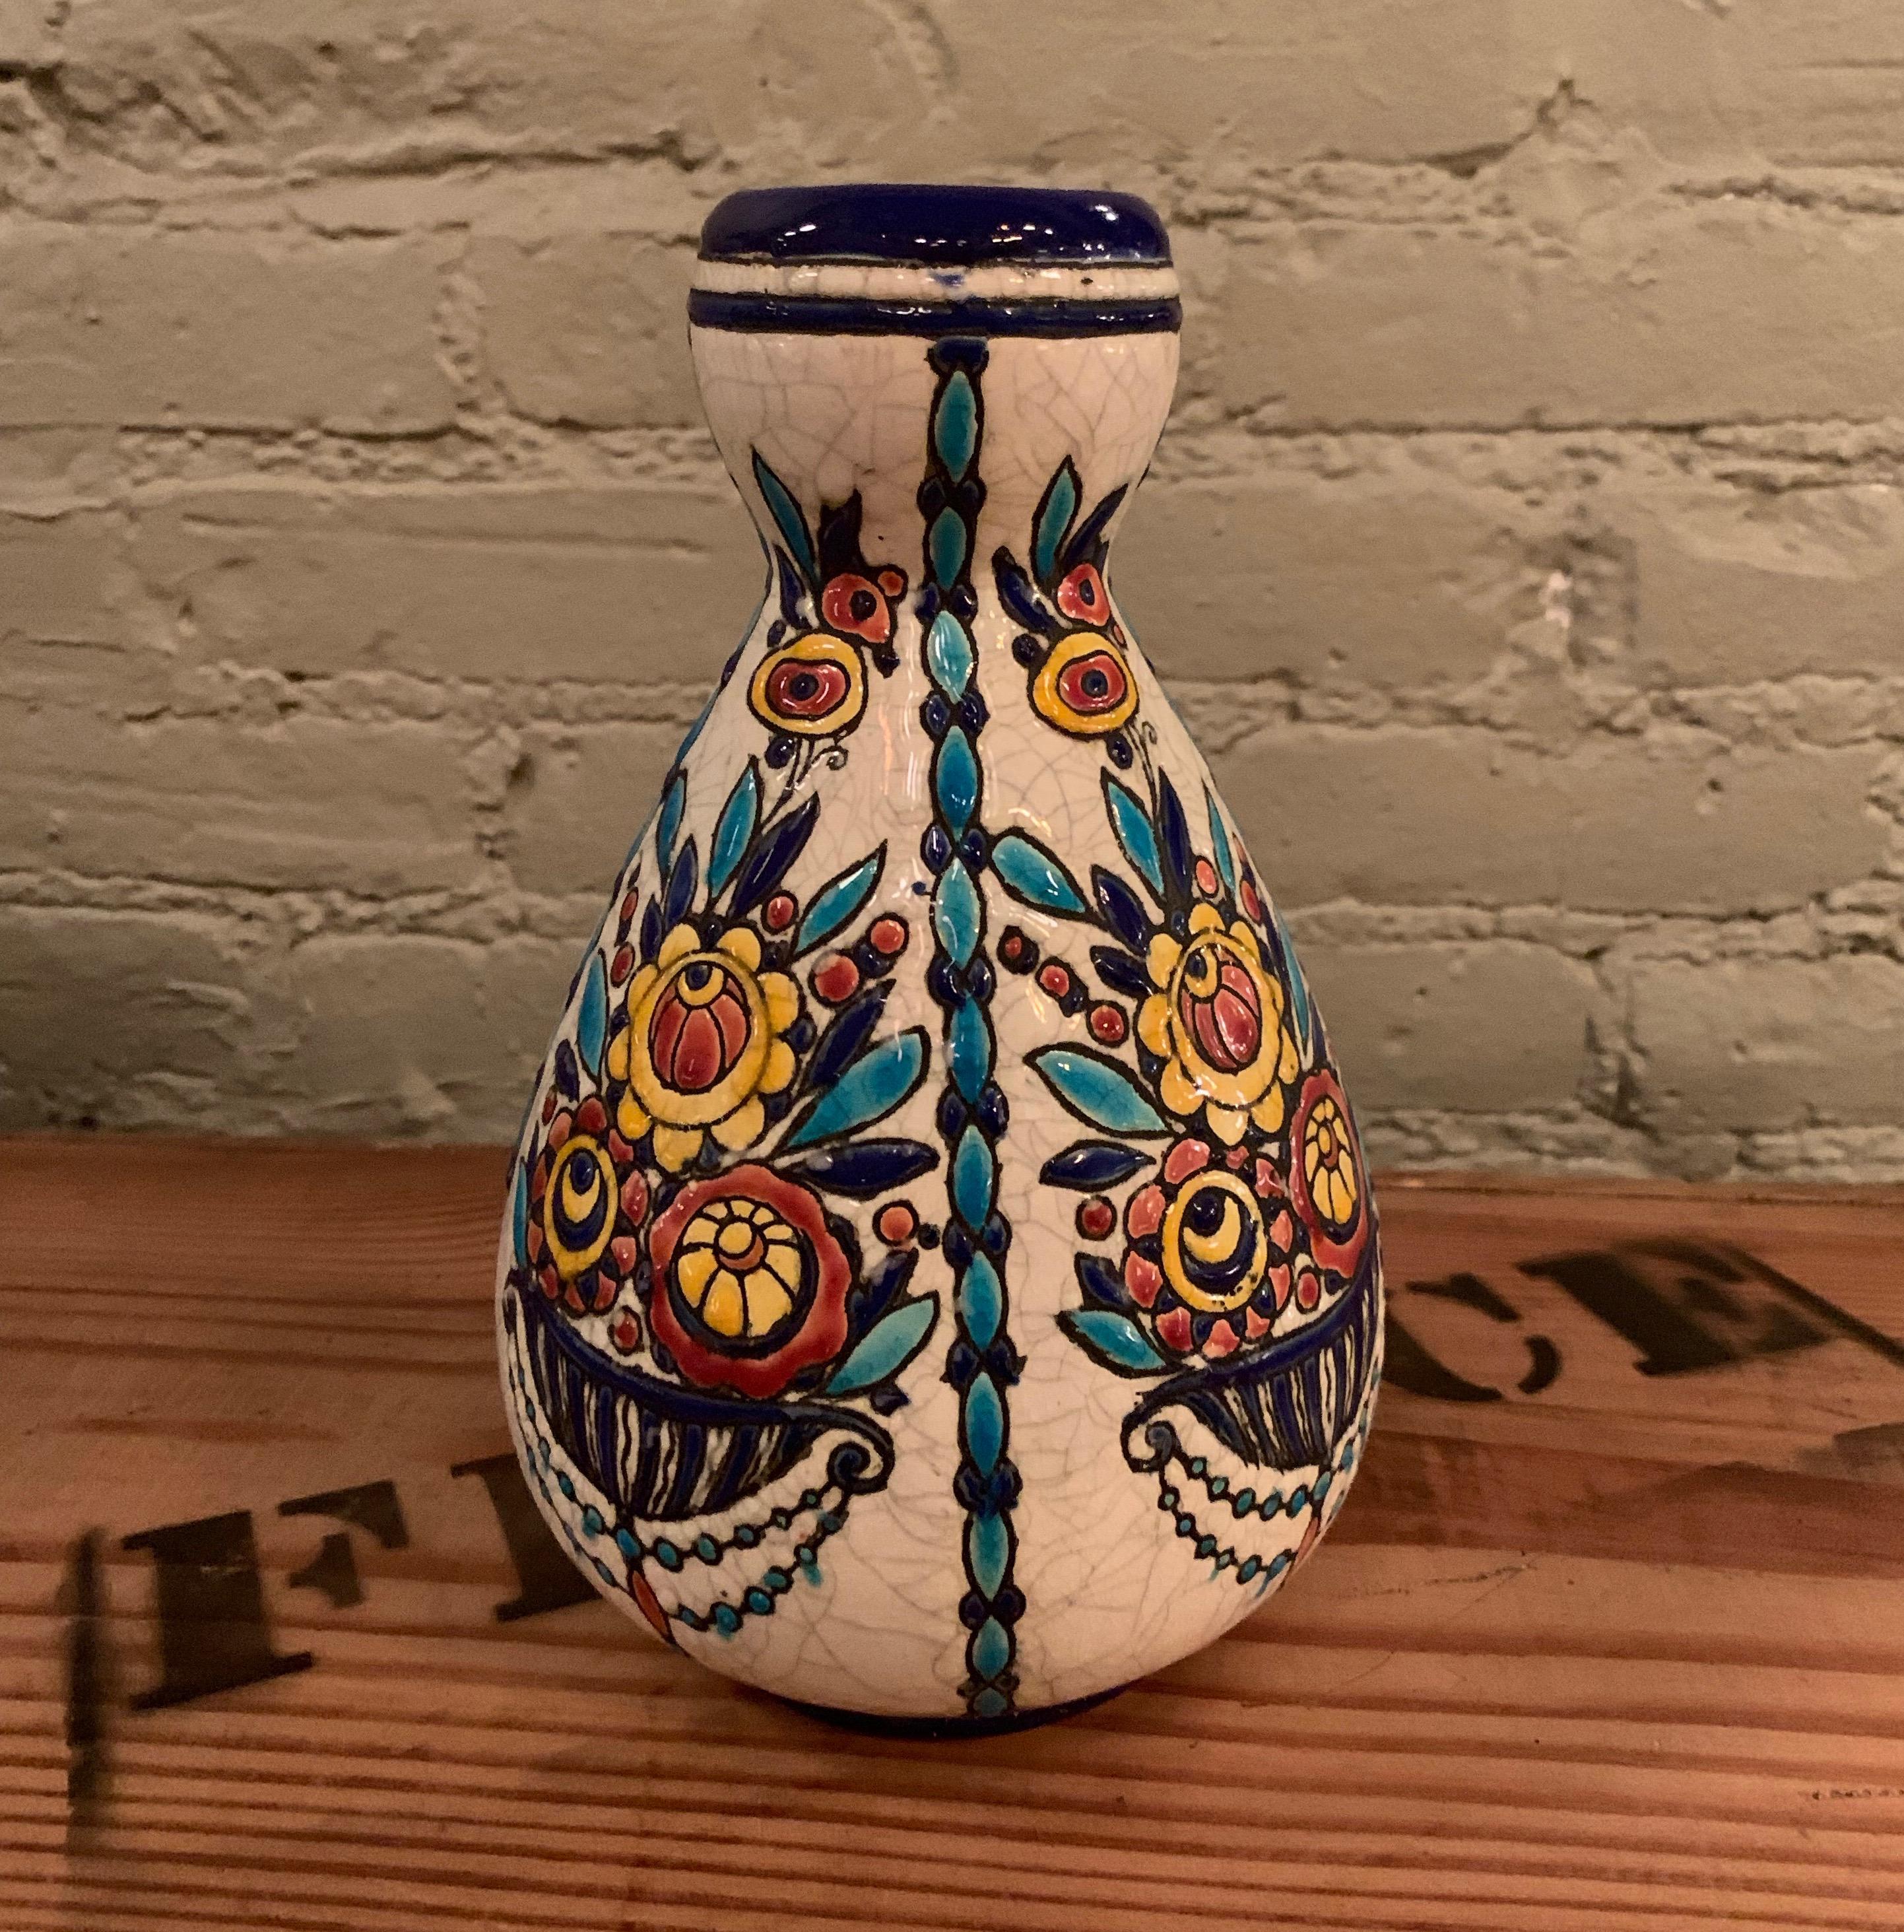 Handbemalte Emaille-Vase, entworfen von Charles Catteau für Boch Frères Keramis; hergestellt in La Louviers, Belgien in den 1930er Jahren. Auf der Unterseite befindet sich die offizielle Fabrikmarke von Boch Frères sowie die Nummer D